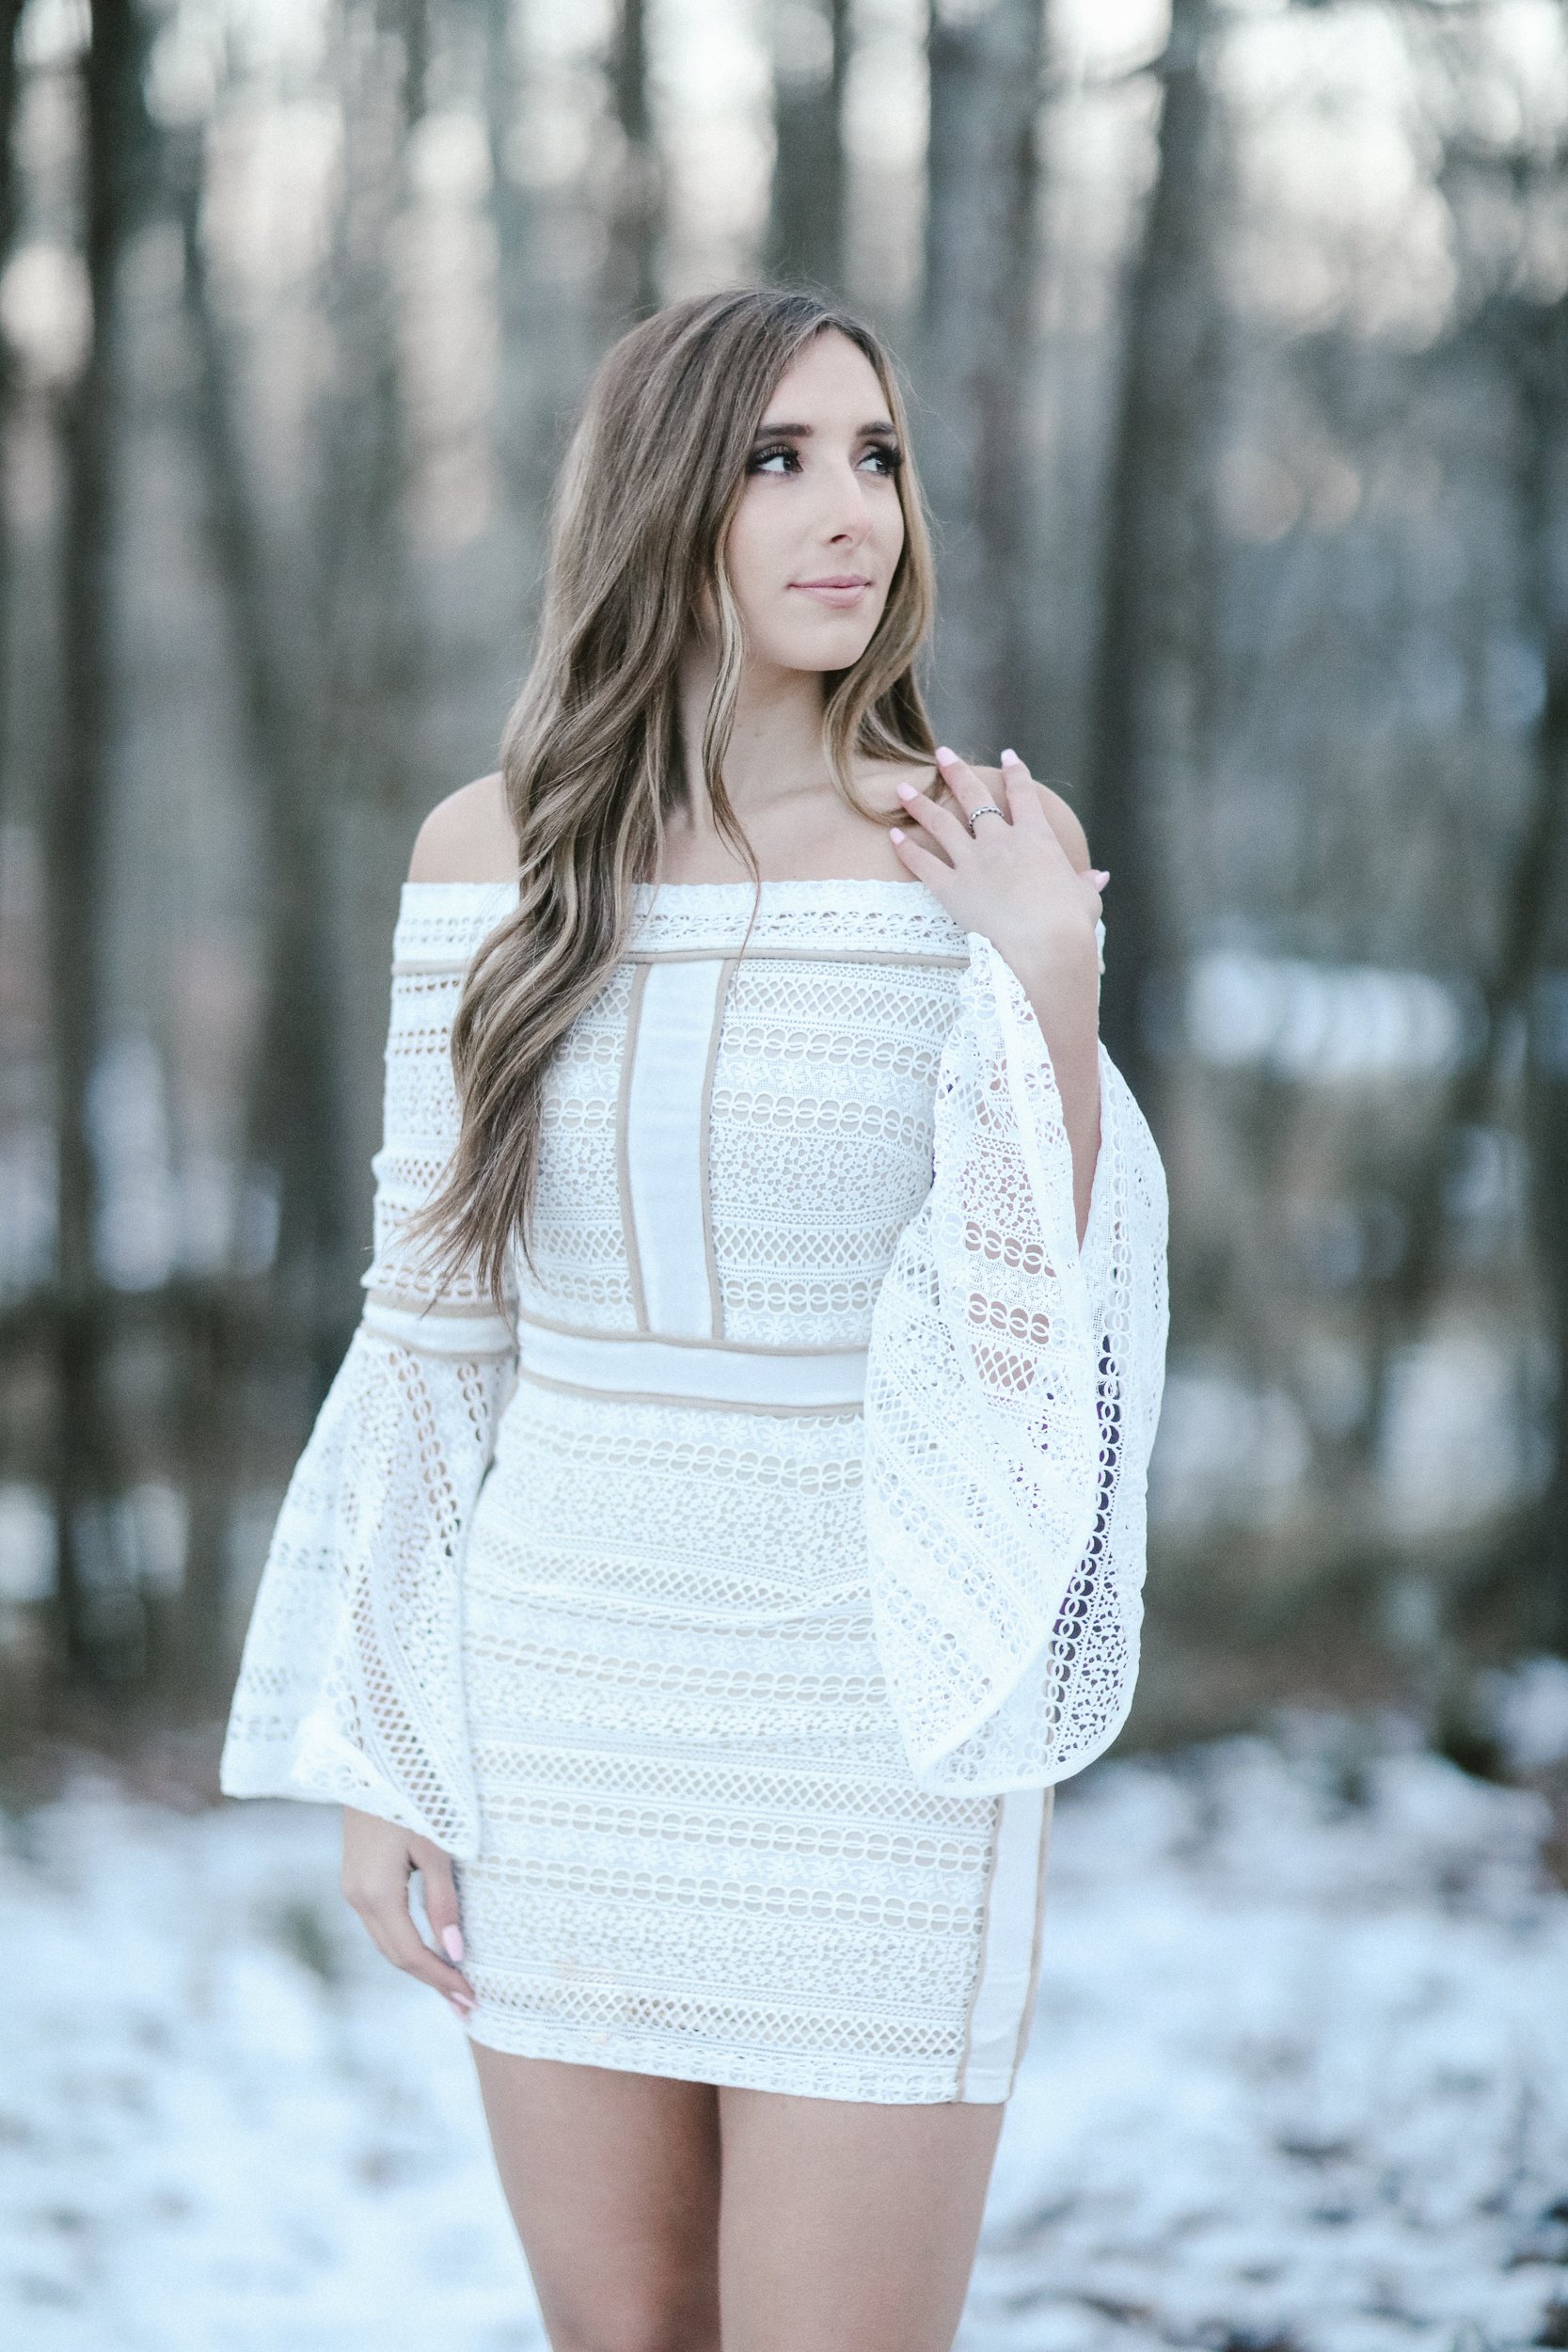 Lady In White Dress – Ten Point